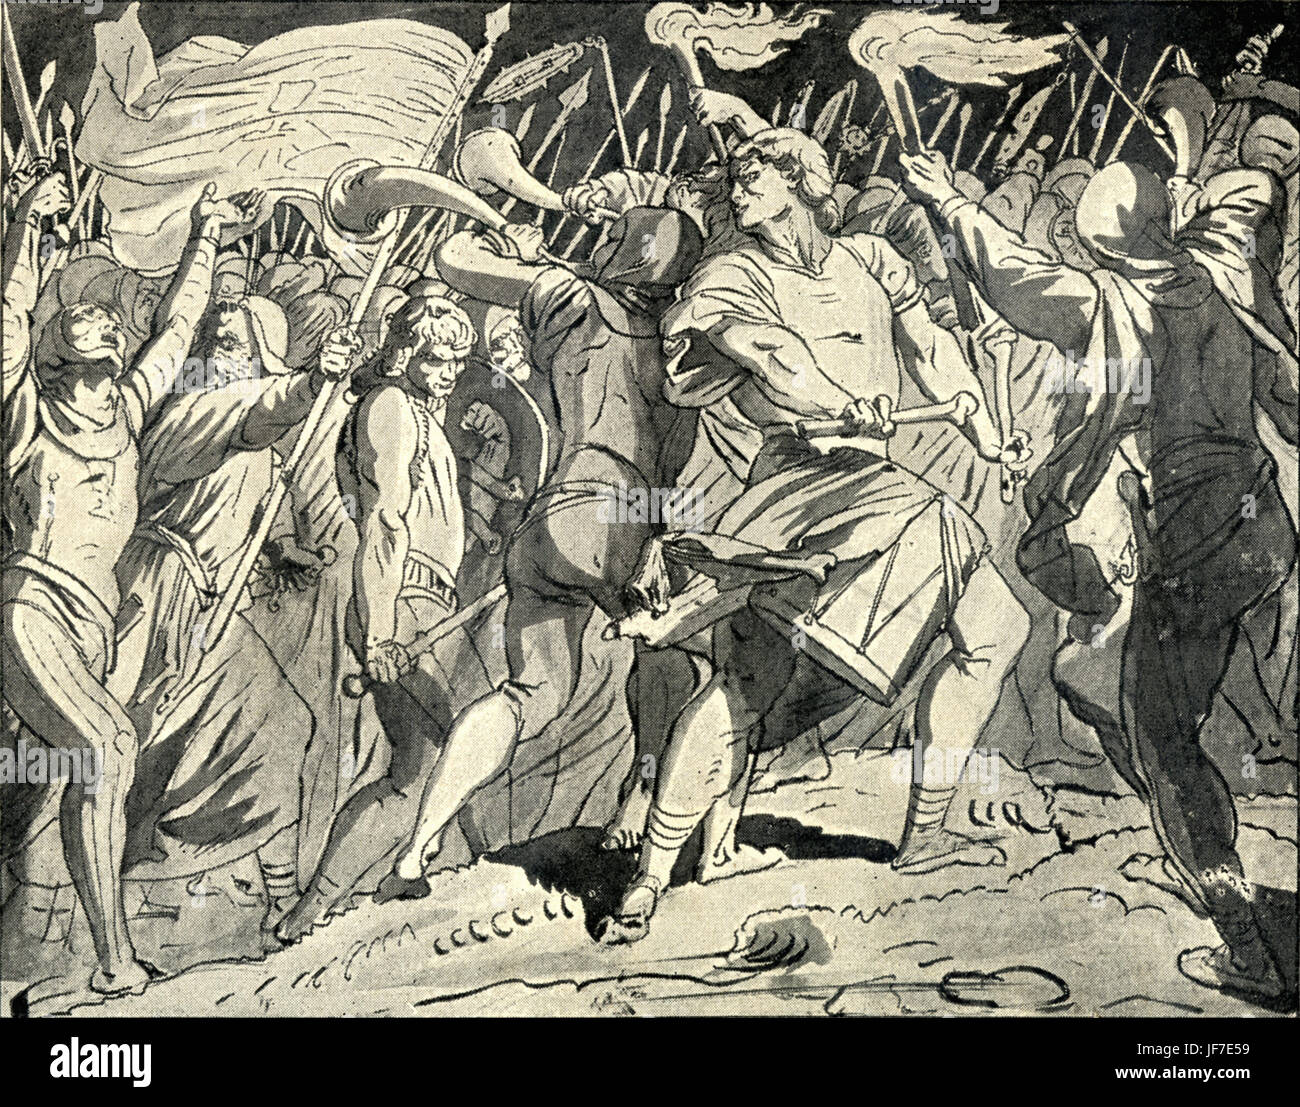 Chanson "militaire" (Chant Militaire) par Josef Mánes, 1820-1871, peintre et illustrateur tchèque, qui a travaillé principalement à Prague. Liées à l'Thabor' par le compositeur tchèque Bedřich Smetana, 2 mars 1824-12 mai 1884. (B/W). Montée du nationalisme tchèque. Banque D'Images